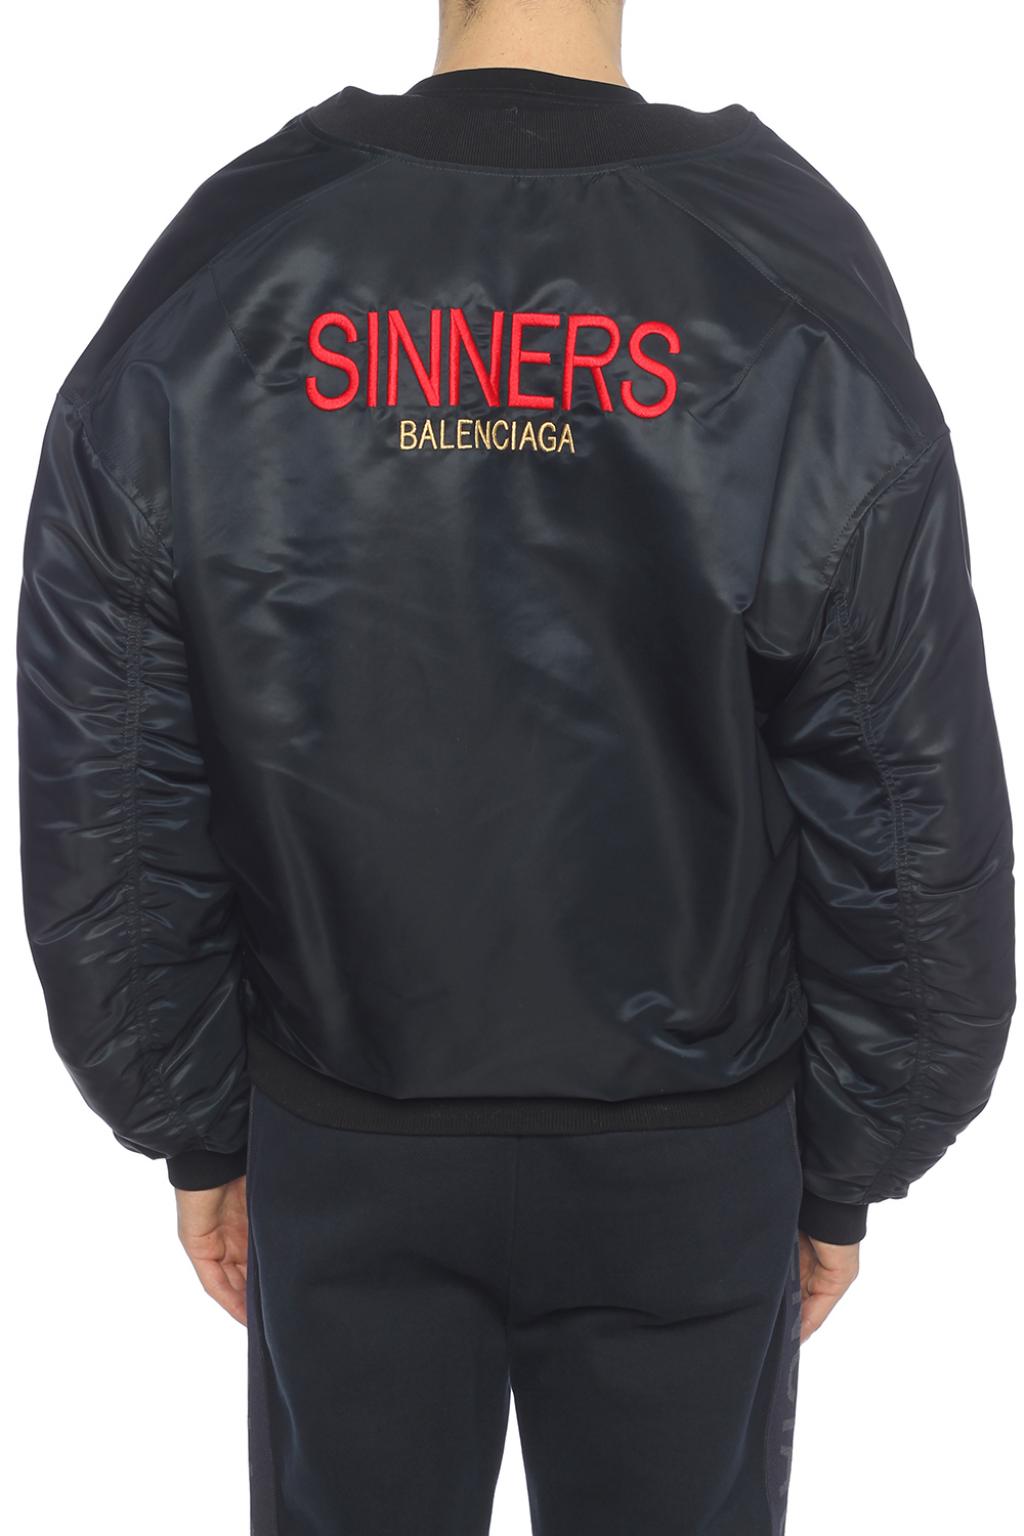 sinners balenciaga jacket